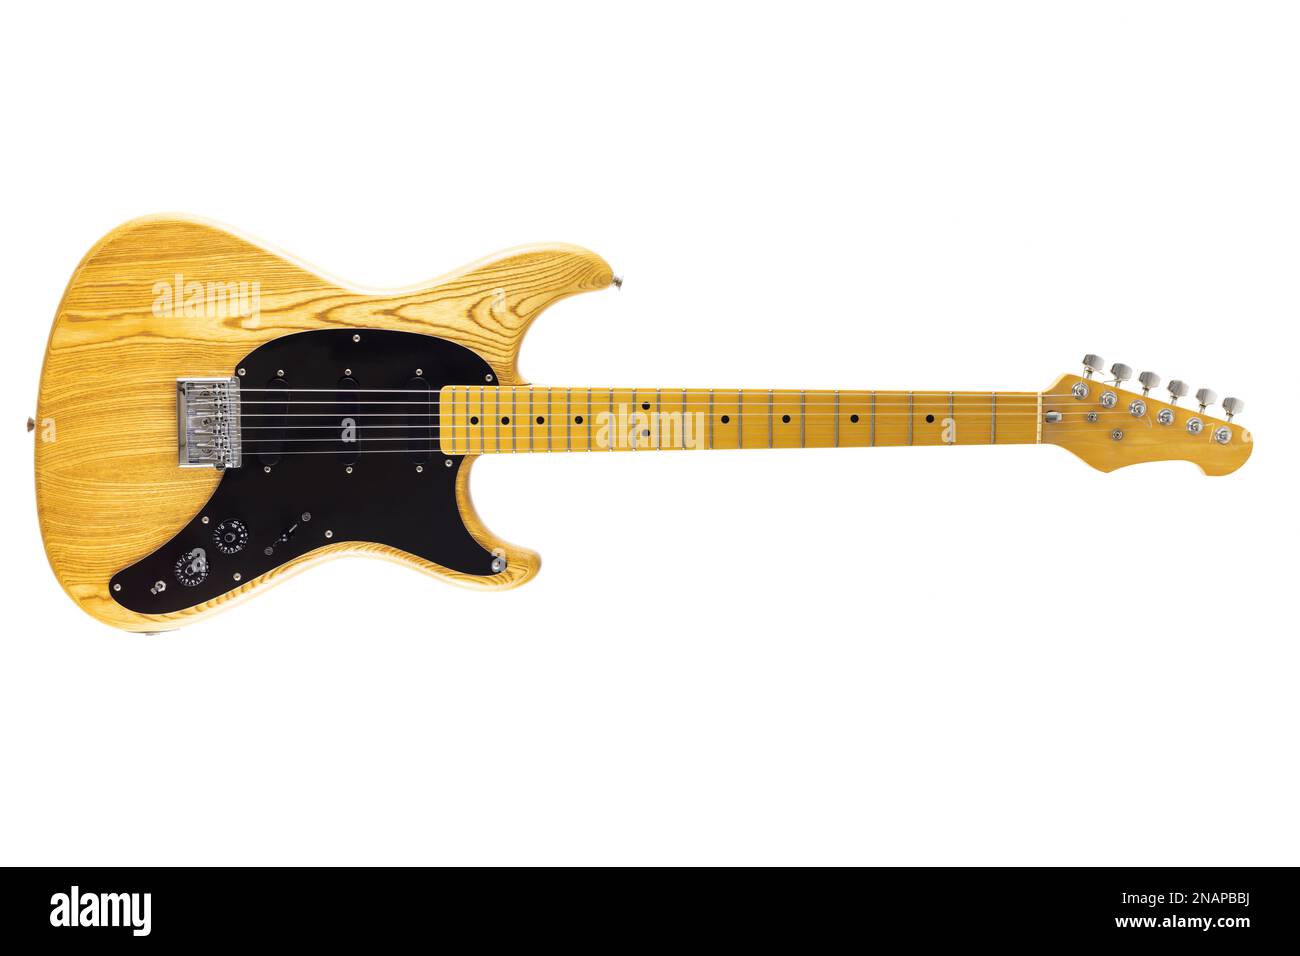 Guitar Electric Guitar découpe Guitar sur fond blanc 1980 Vintage Guitar Ibanez blazer guitare électrique Banque D'Images